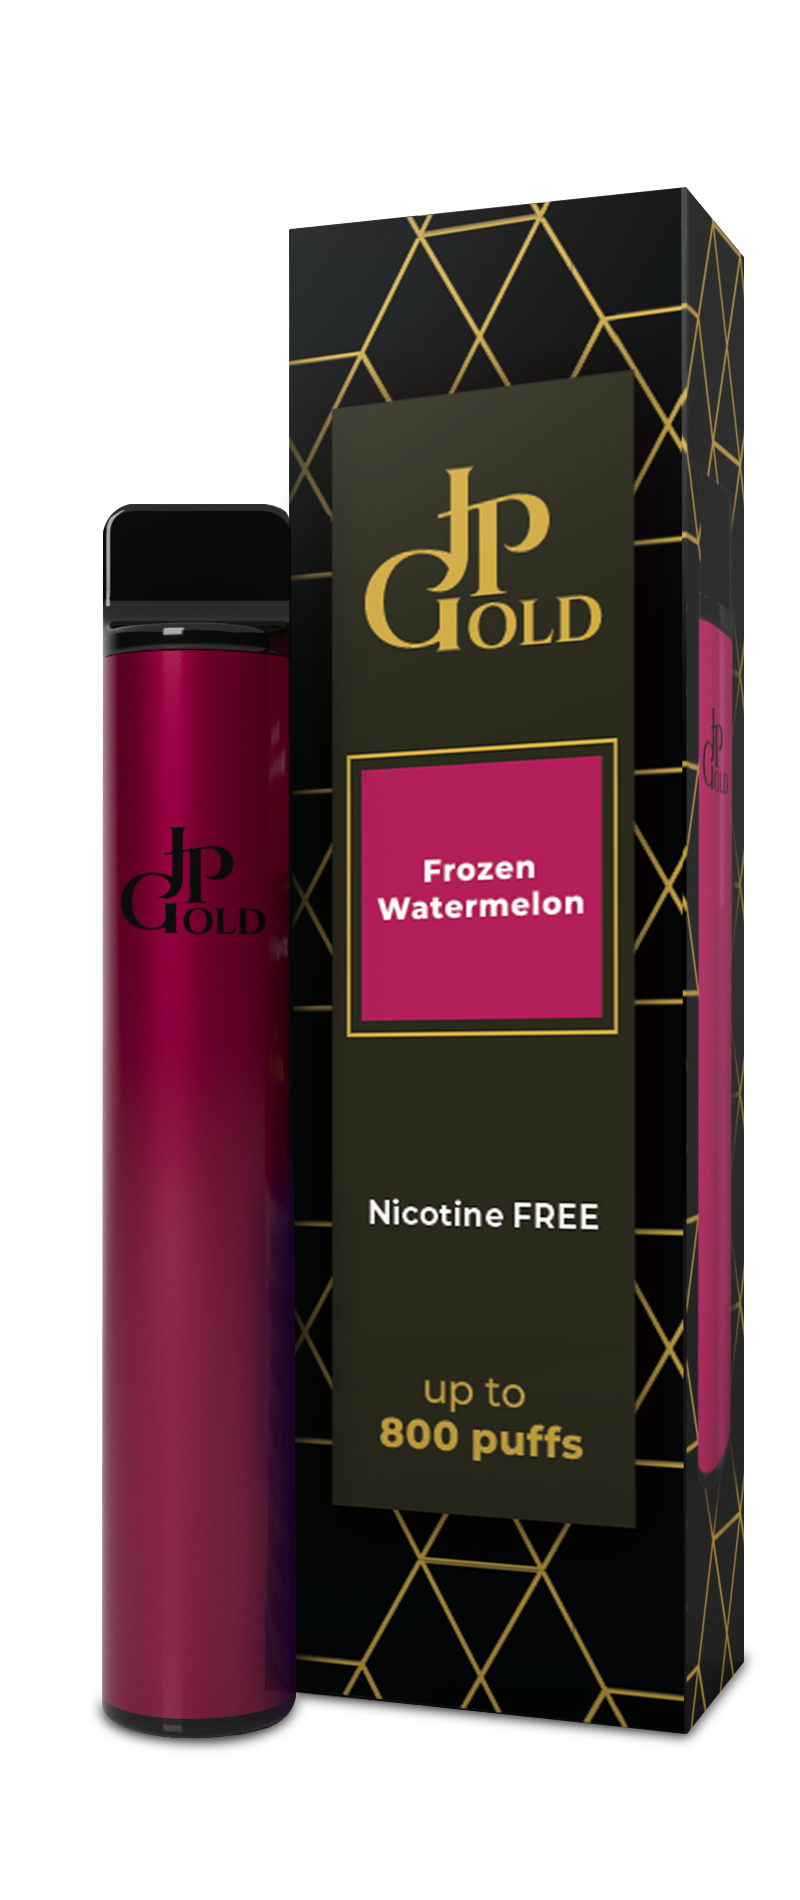 JP GOLD Premium, Frozen Watermelon, nicotine free